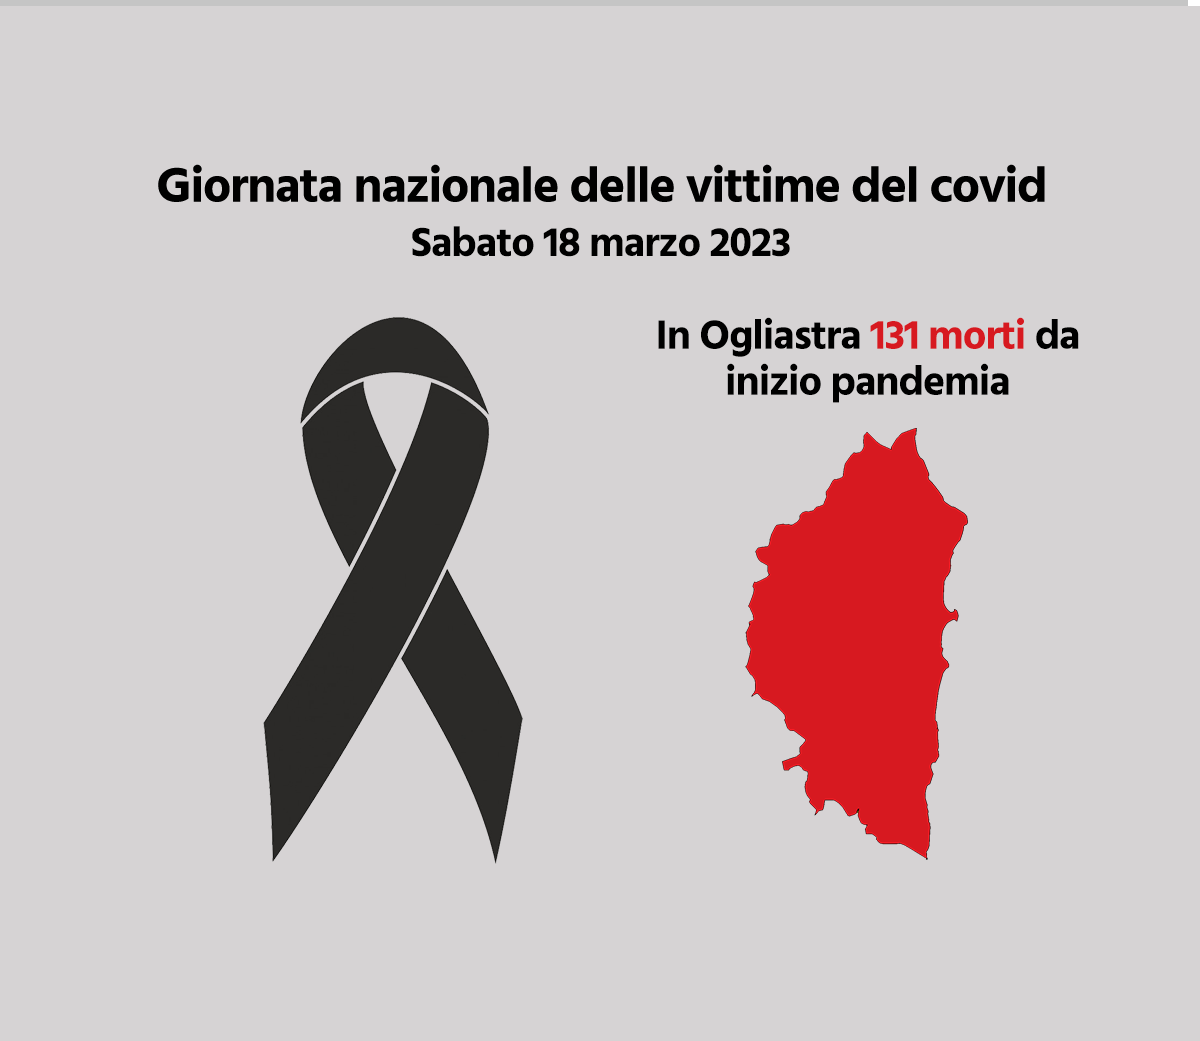 Giornata nazionale delle vittime del Covid, in Ogliastra 131 morti